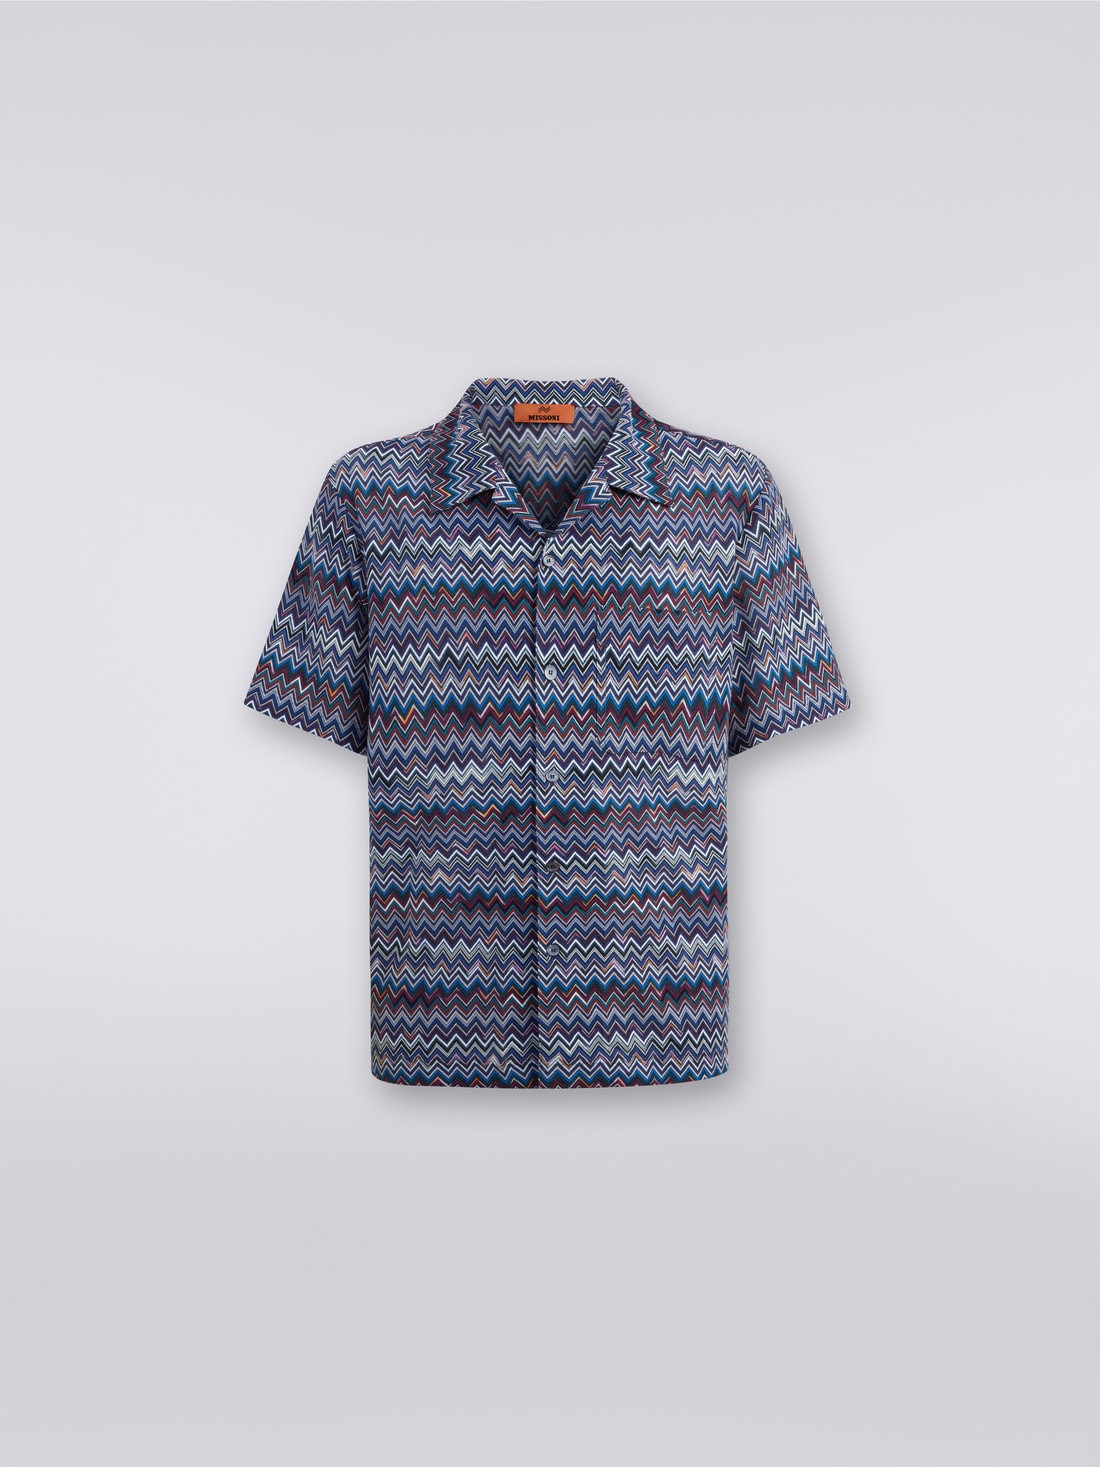 Kurzärmeliges Bowlinghemd aus Baumwolle und Viskose mit Zickzackmuster, Marineblau  - US23WJ08BR00OUSM8Y1 - 0